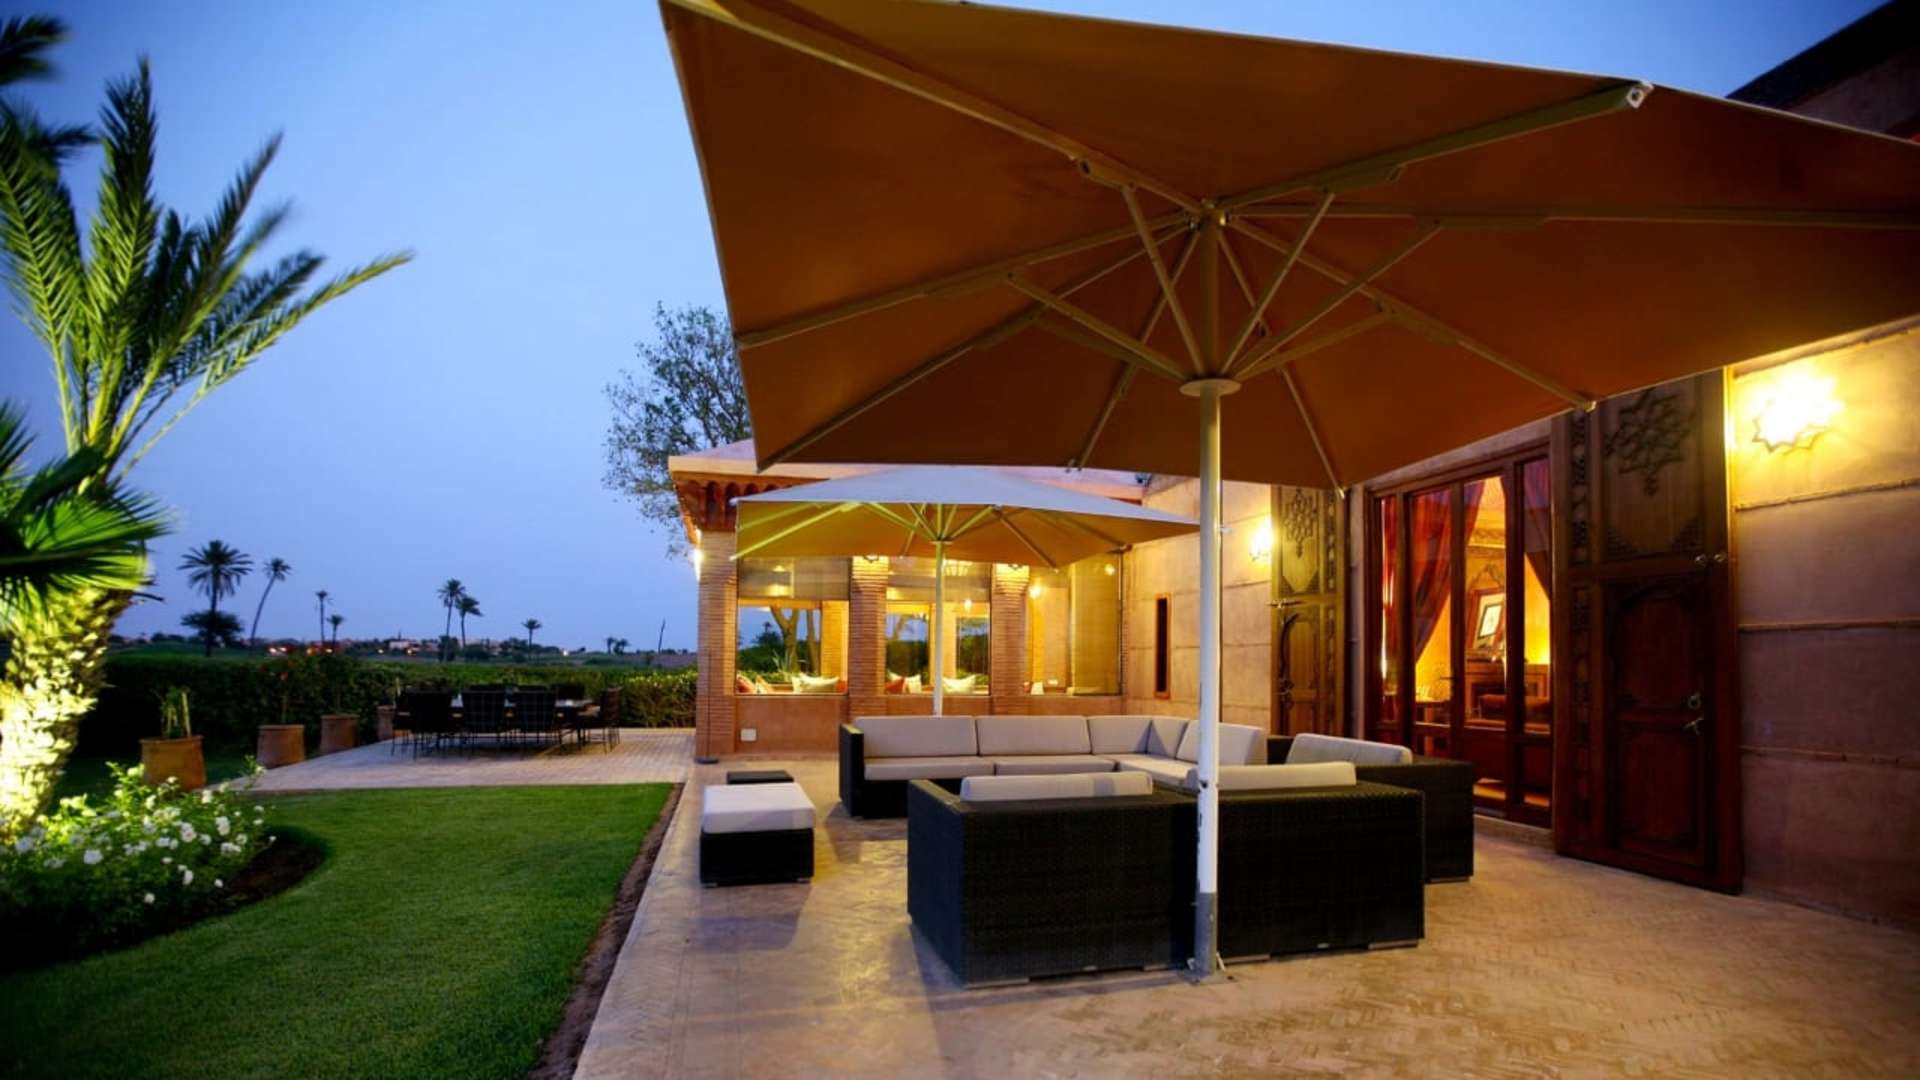 Location de vacances,Villa,Villa 5 suites en première ligne sur le golf d'Amelkis,Marrakech,Amelkis Golf Resort